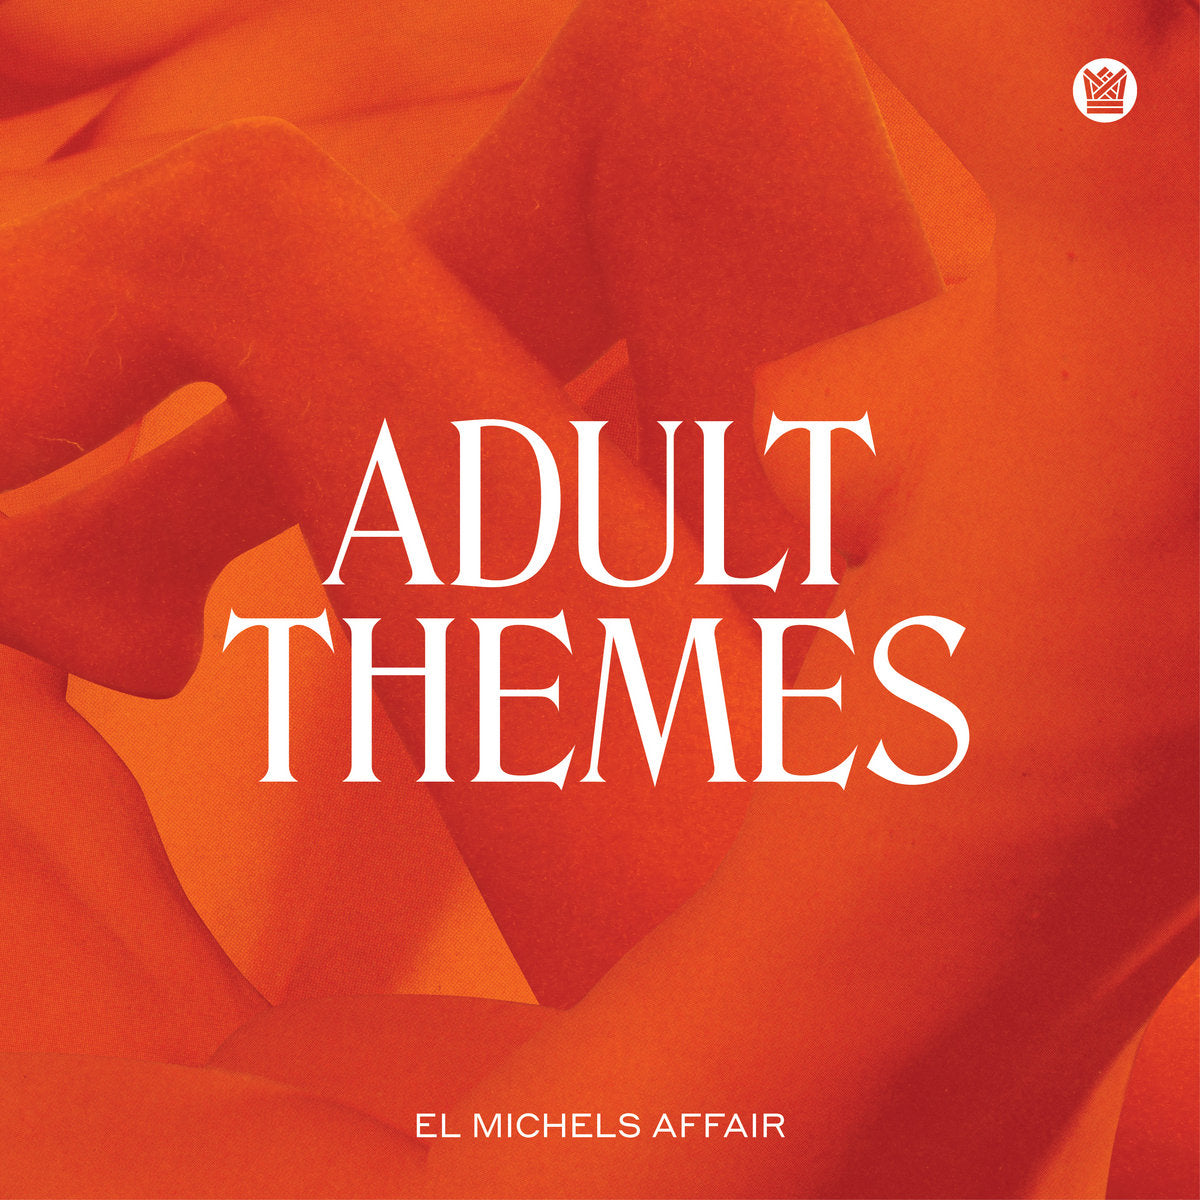 El Michels Affair - Adult Themes (Vinyl LP)